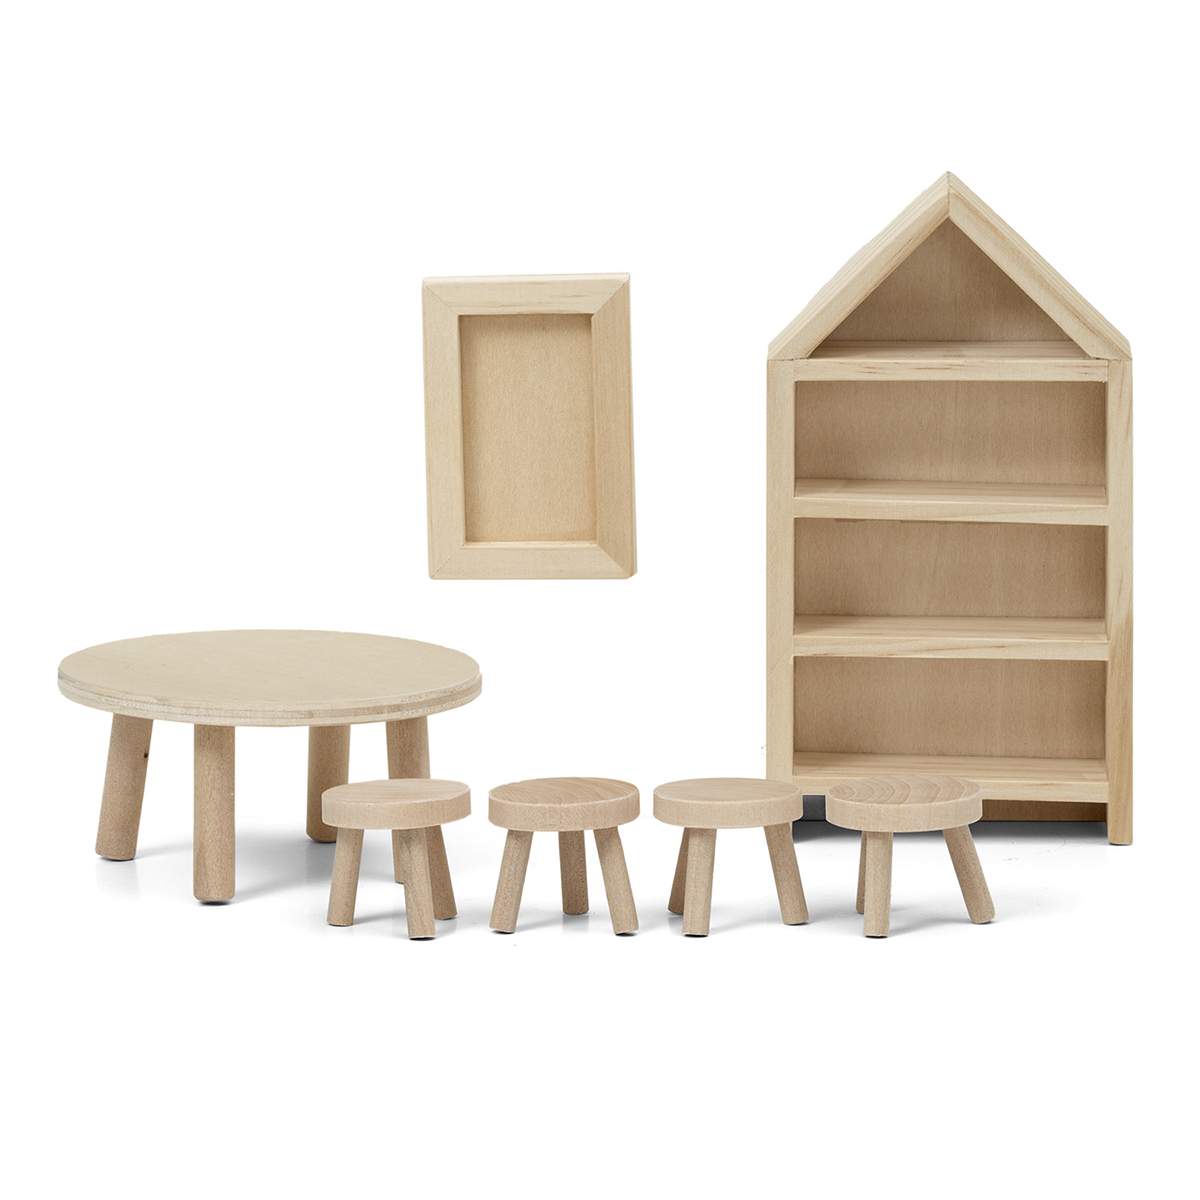 Набор деревянной мебели для кукольного домика